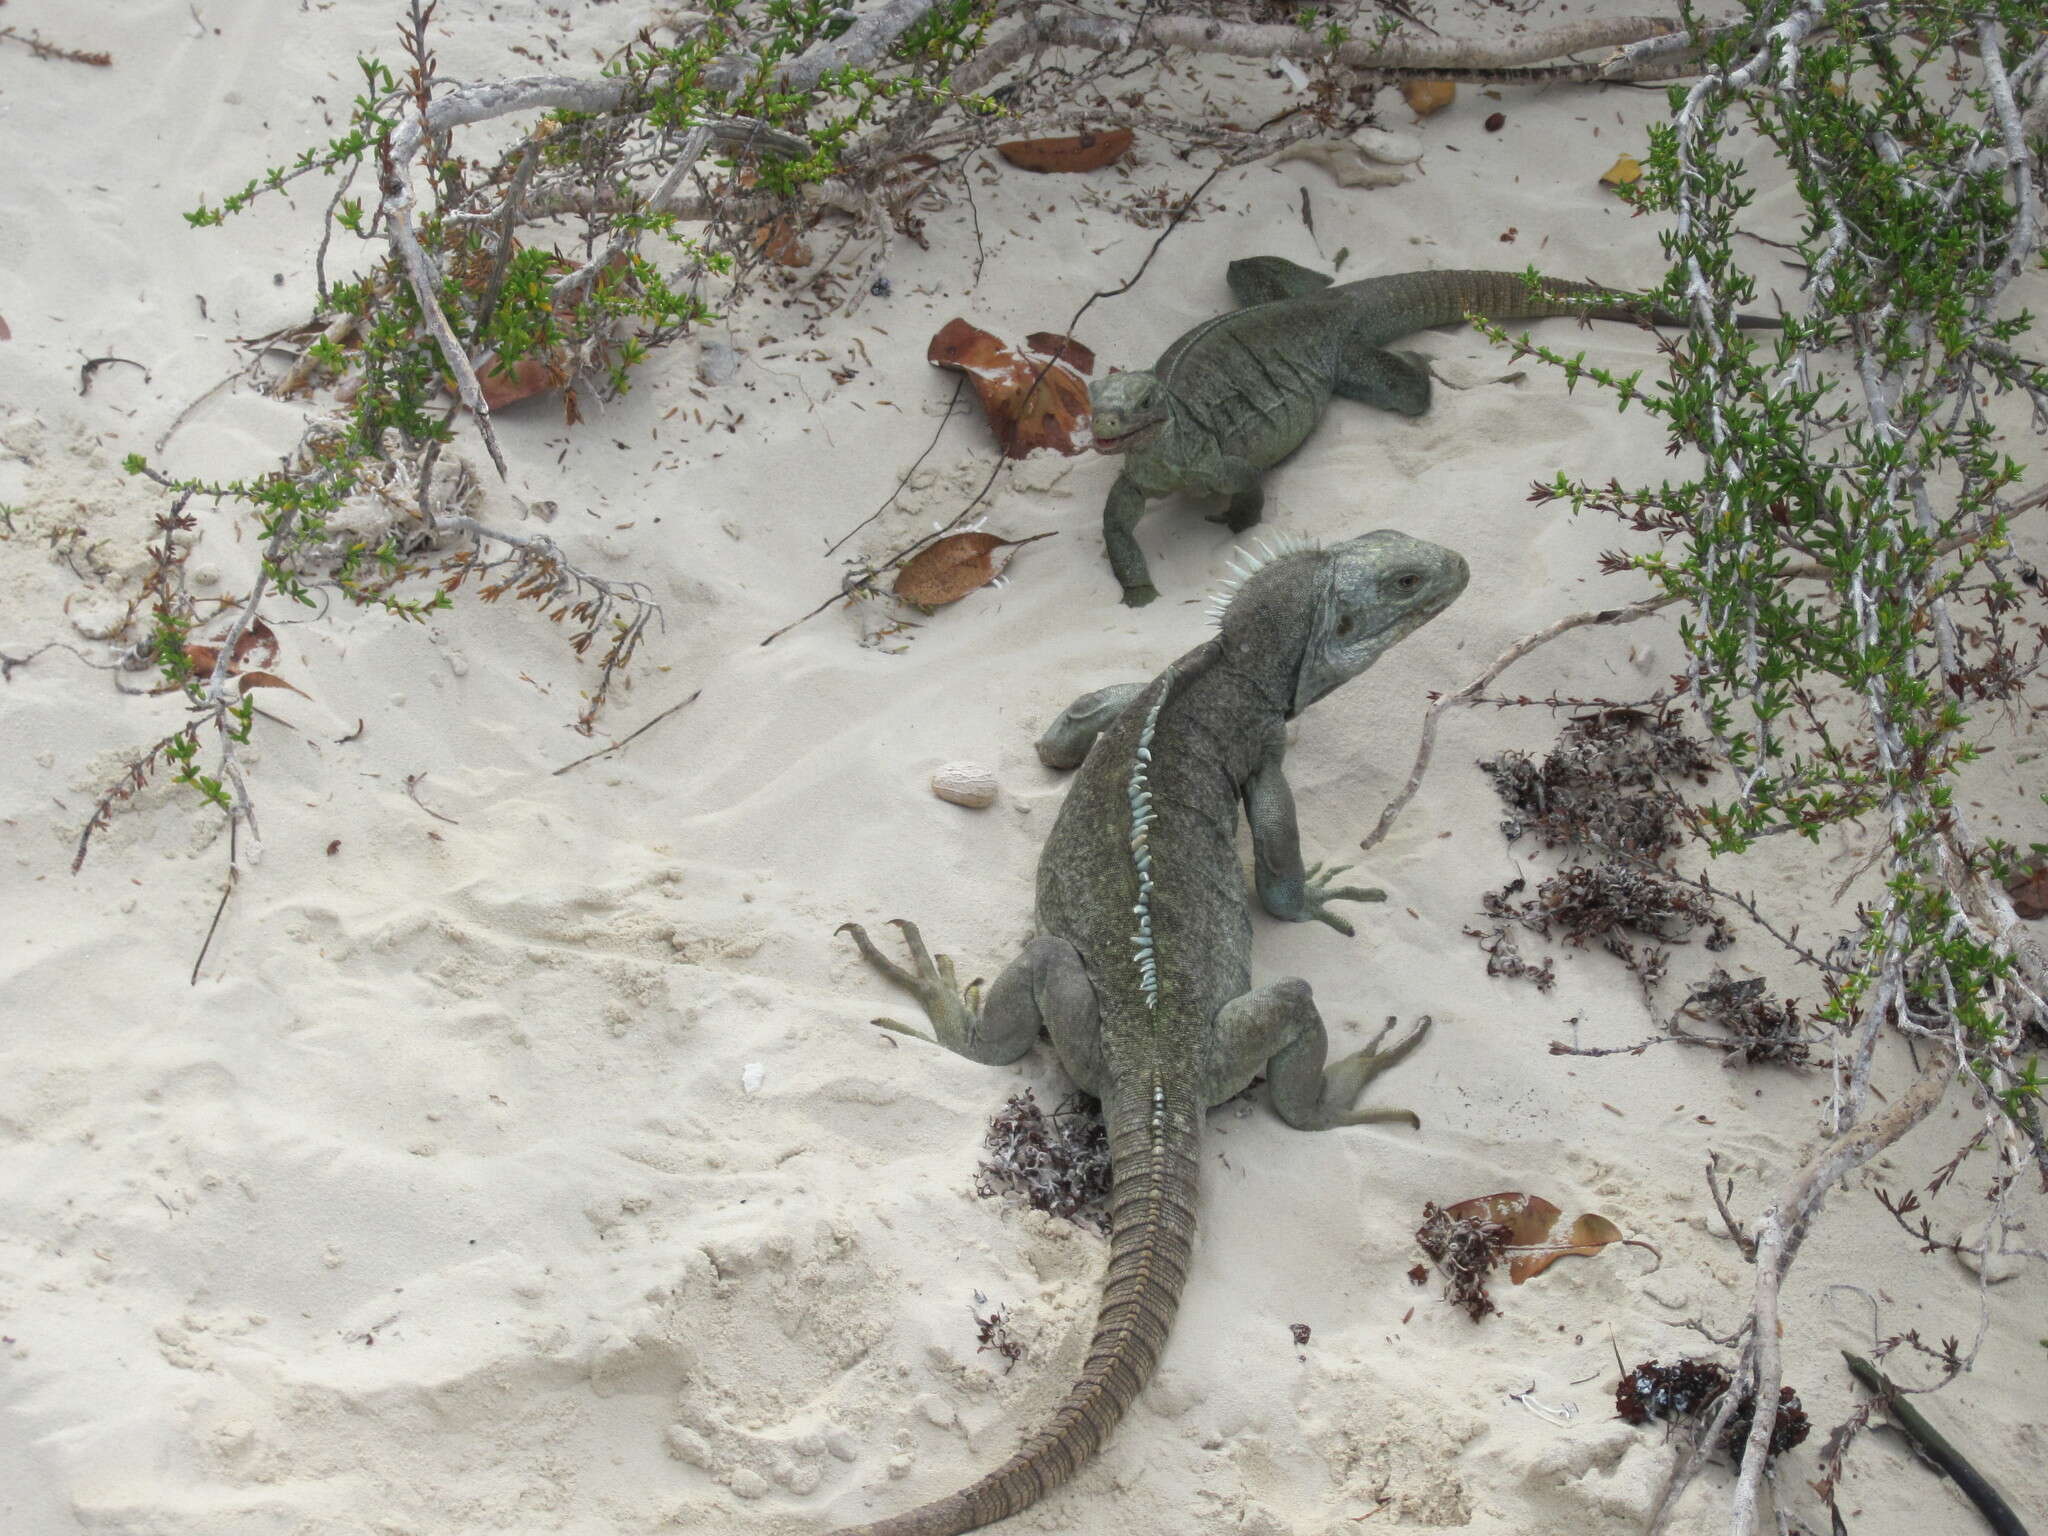 Image of Bahamas Rock Iguana